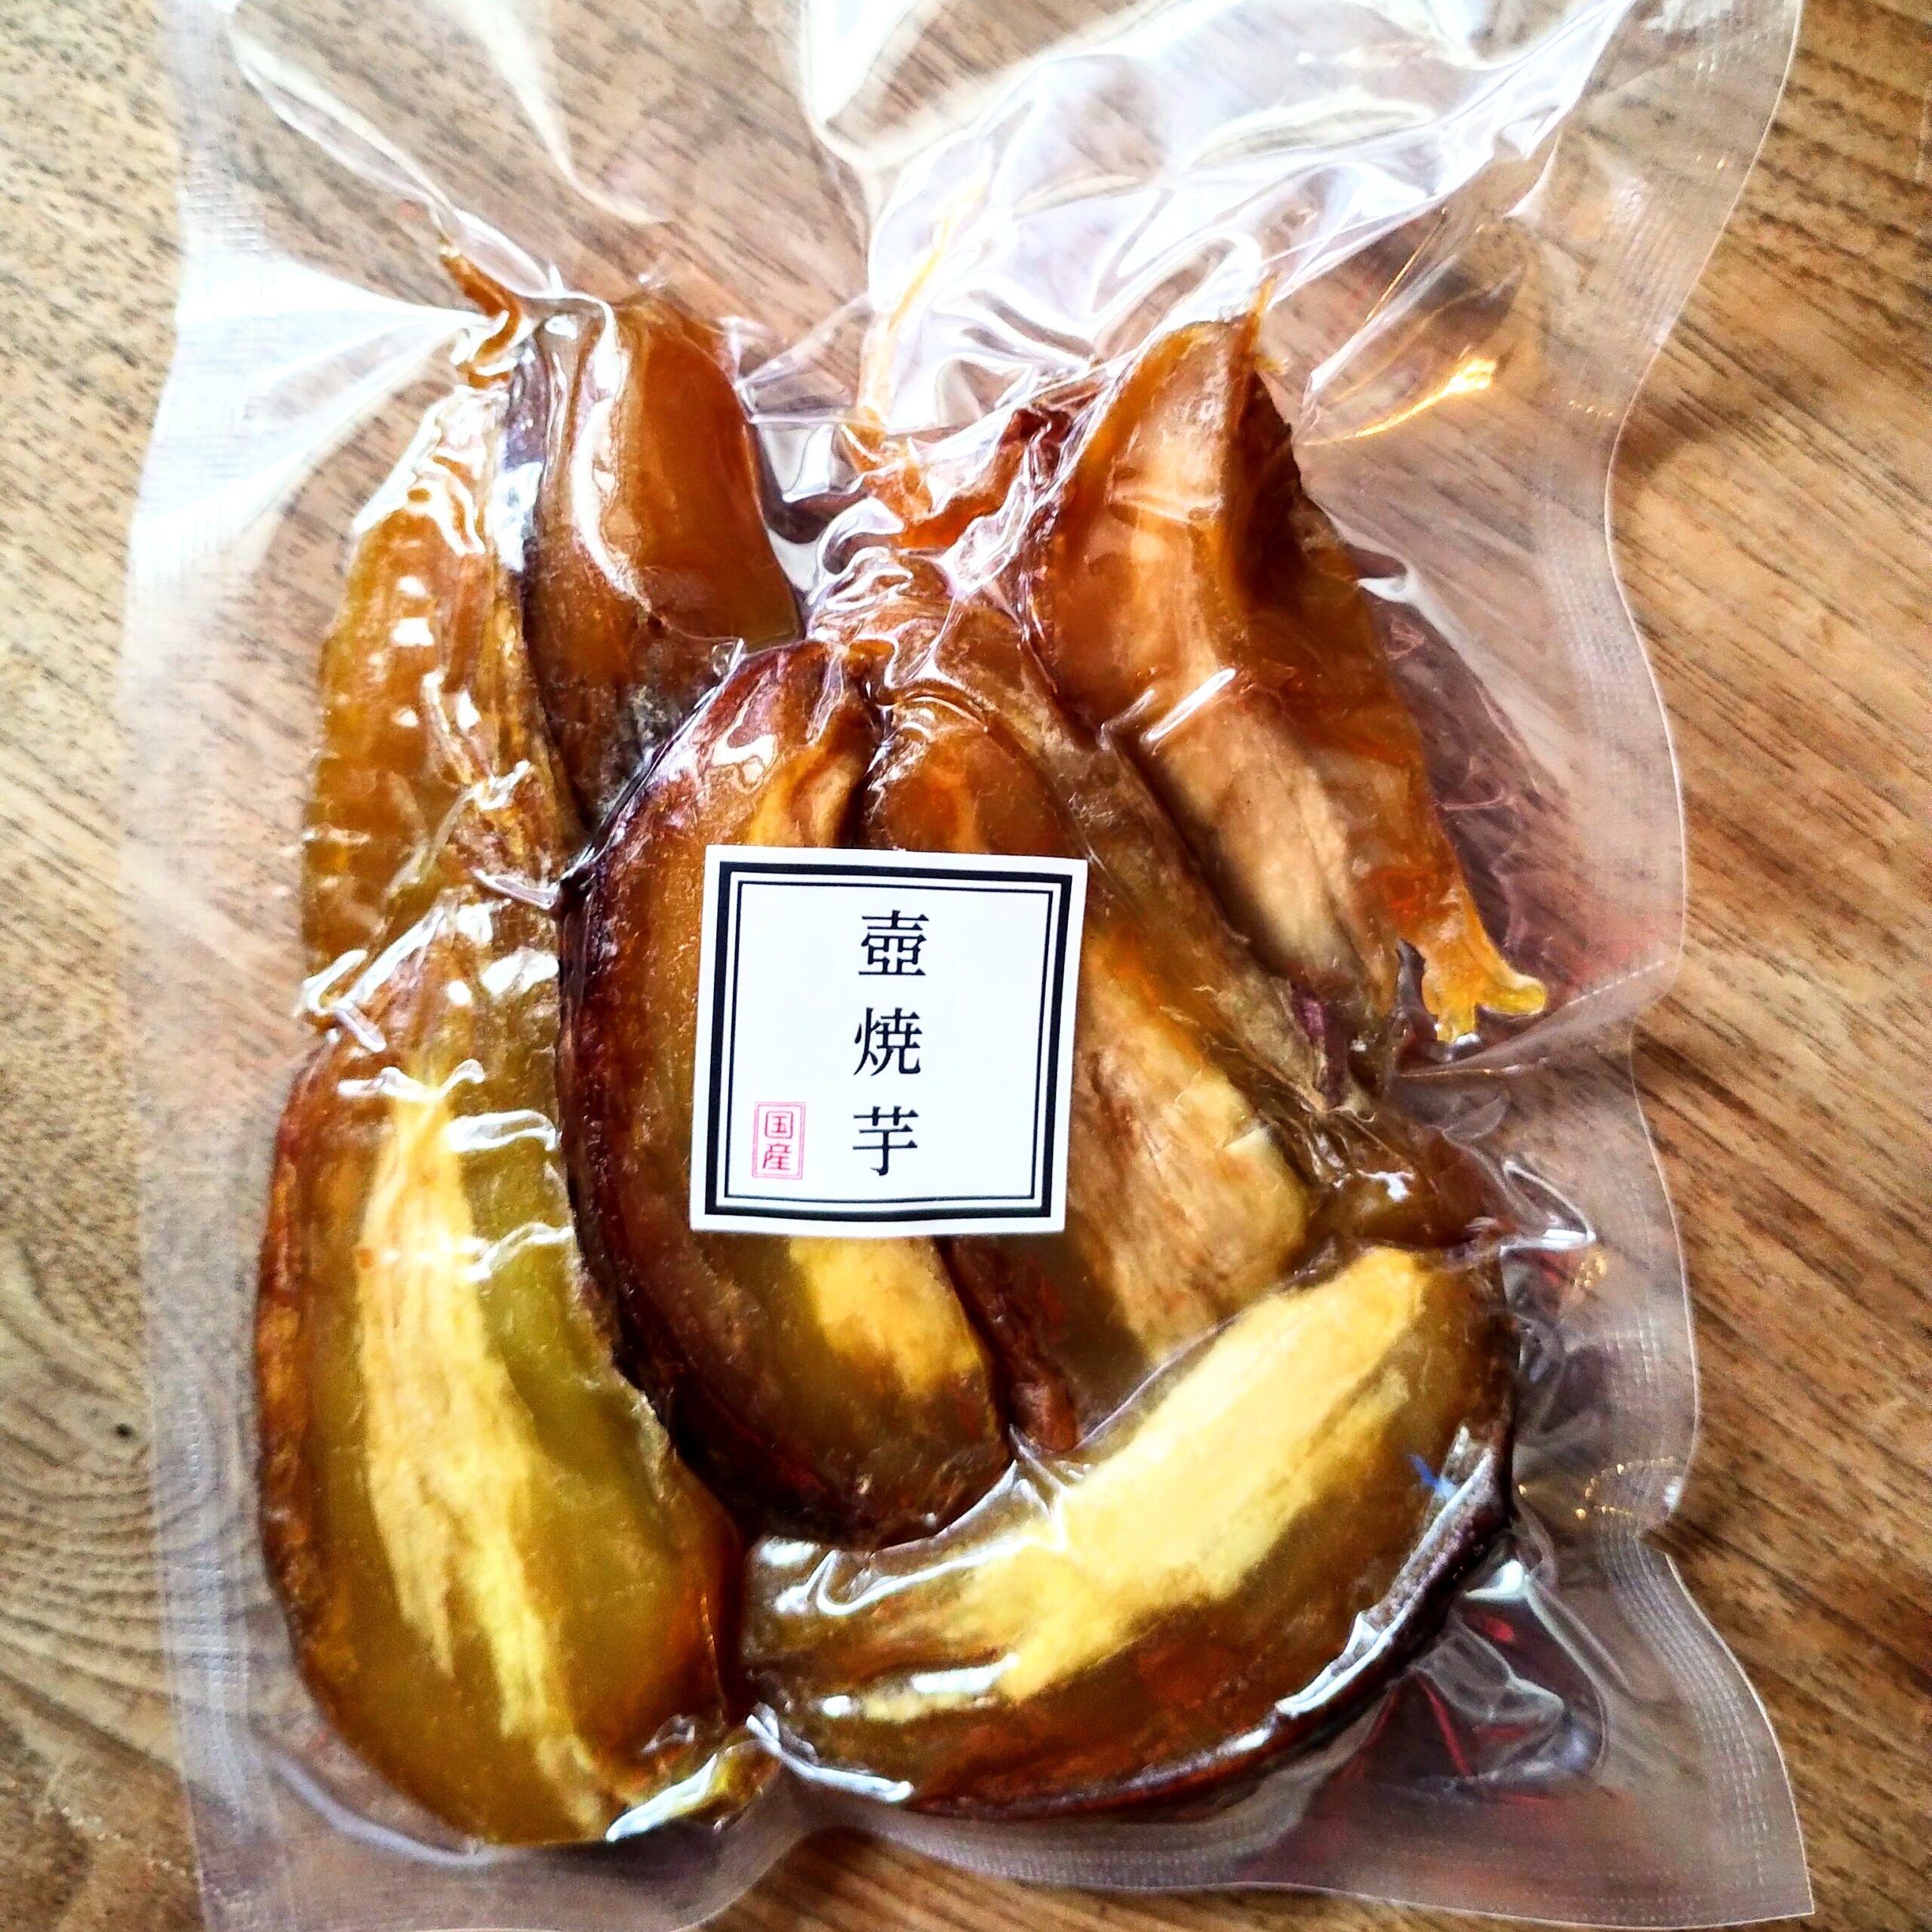 壺焼き芋の壺 開業支援 - 静岡県のその他